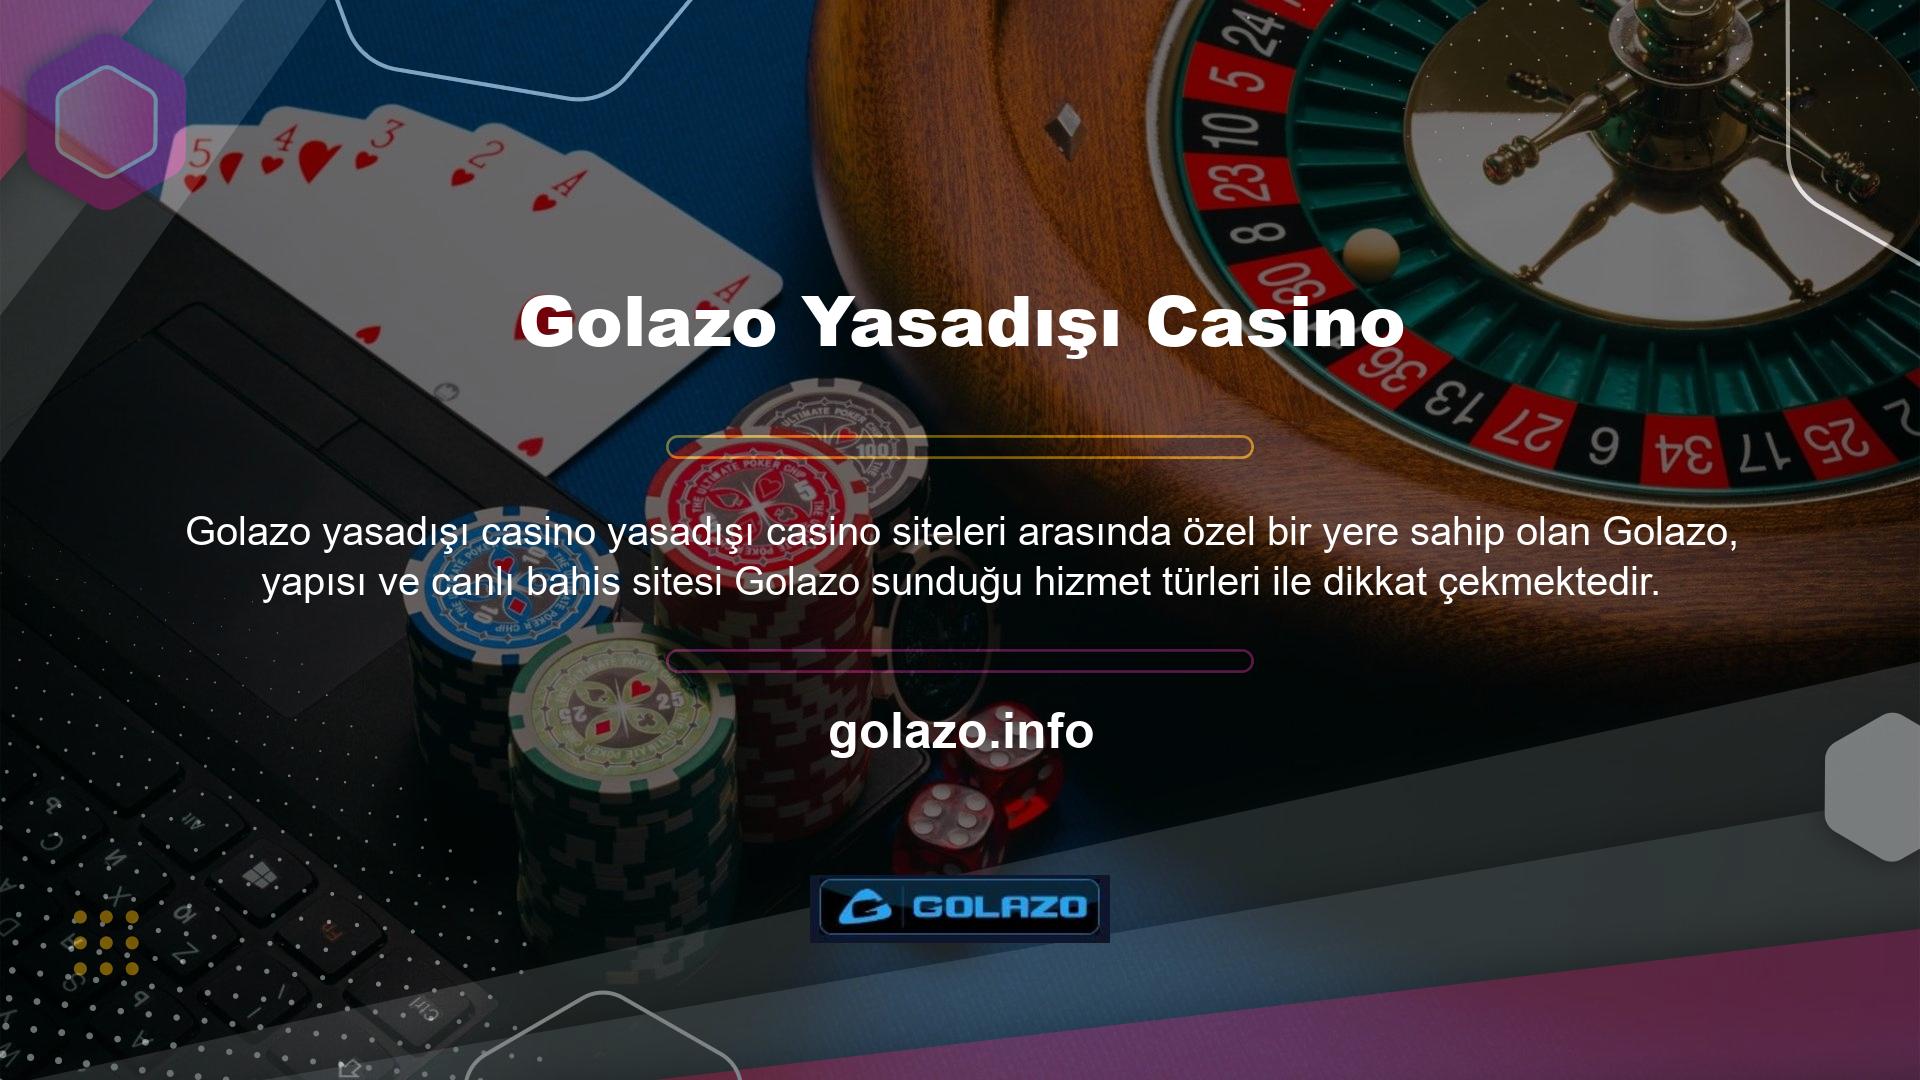 Dünyanın önde gelen şirketlerinden biri olan Golazo, üyelerine kaliteli oyun ürünleri sunabilmektedir